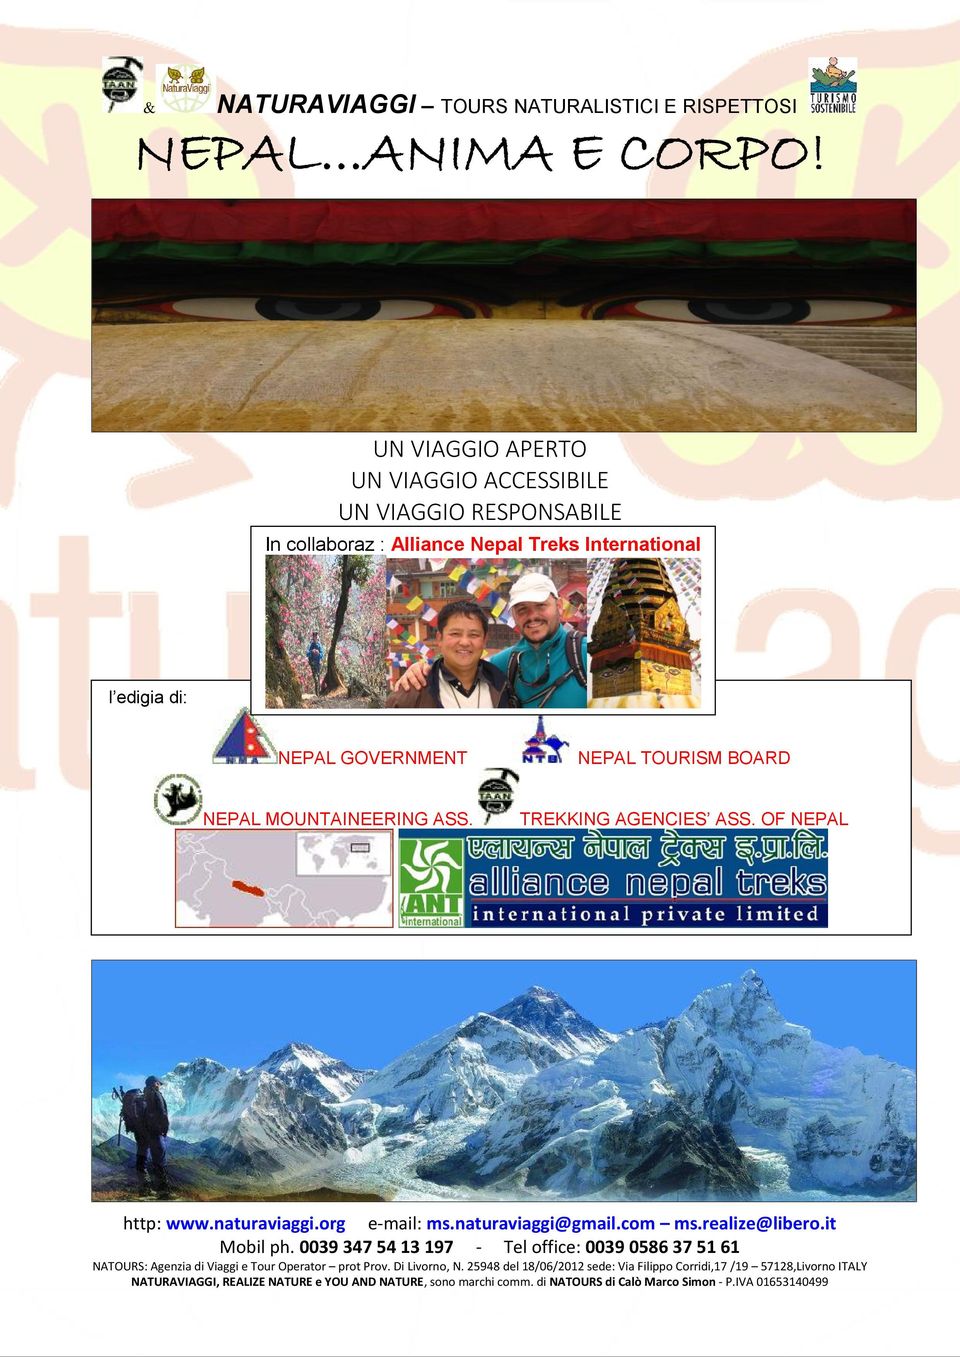 RESPONSABILE In collaboraz : Alliance Nepal Treks